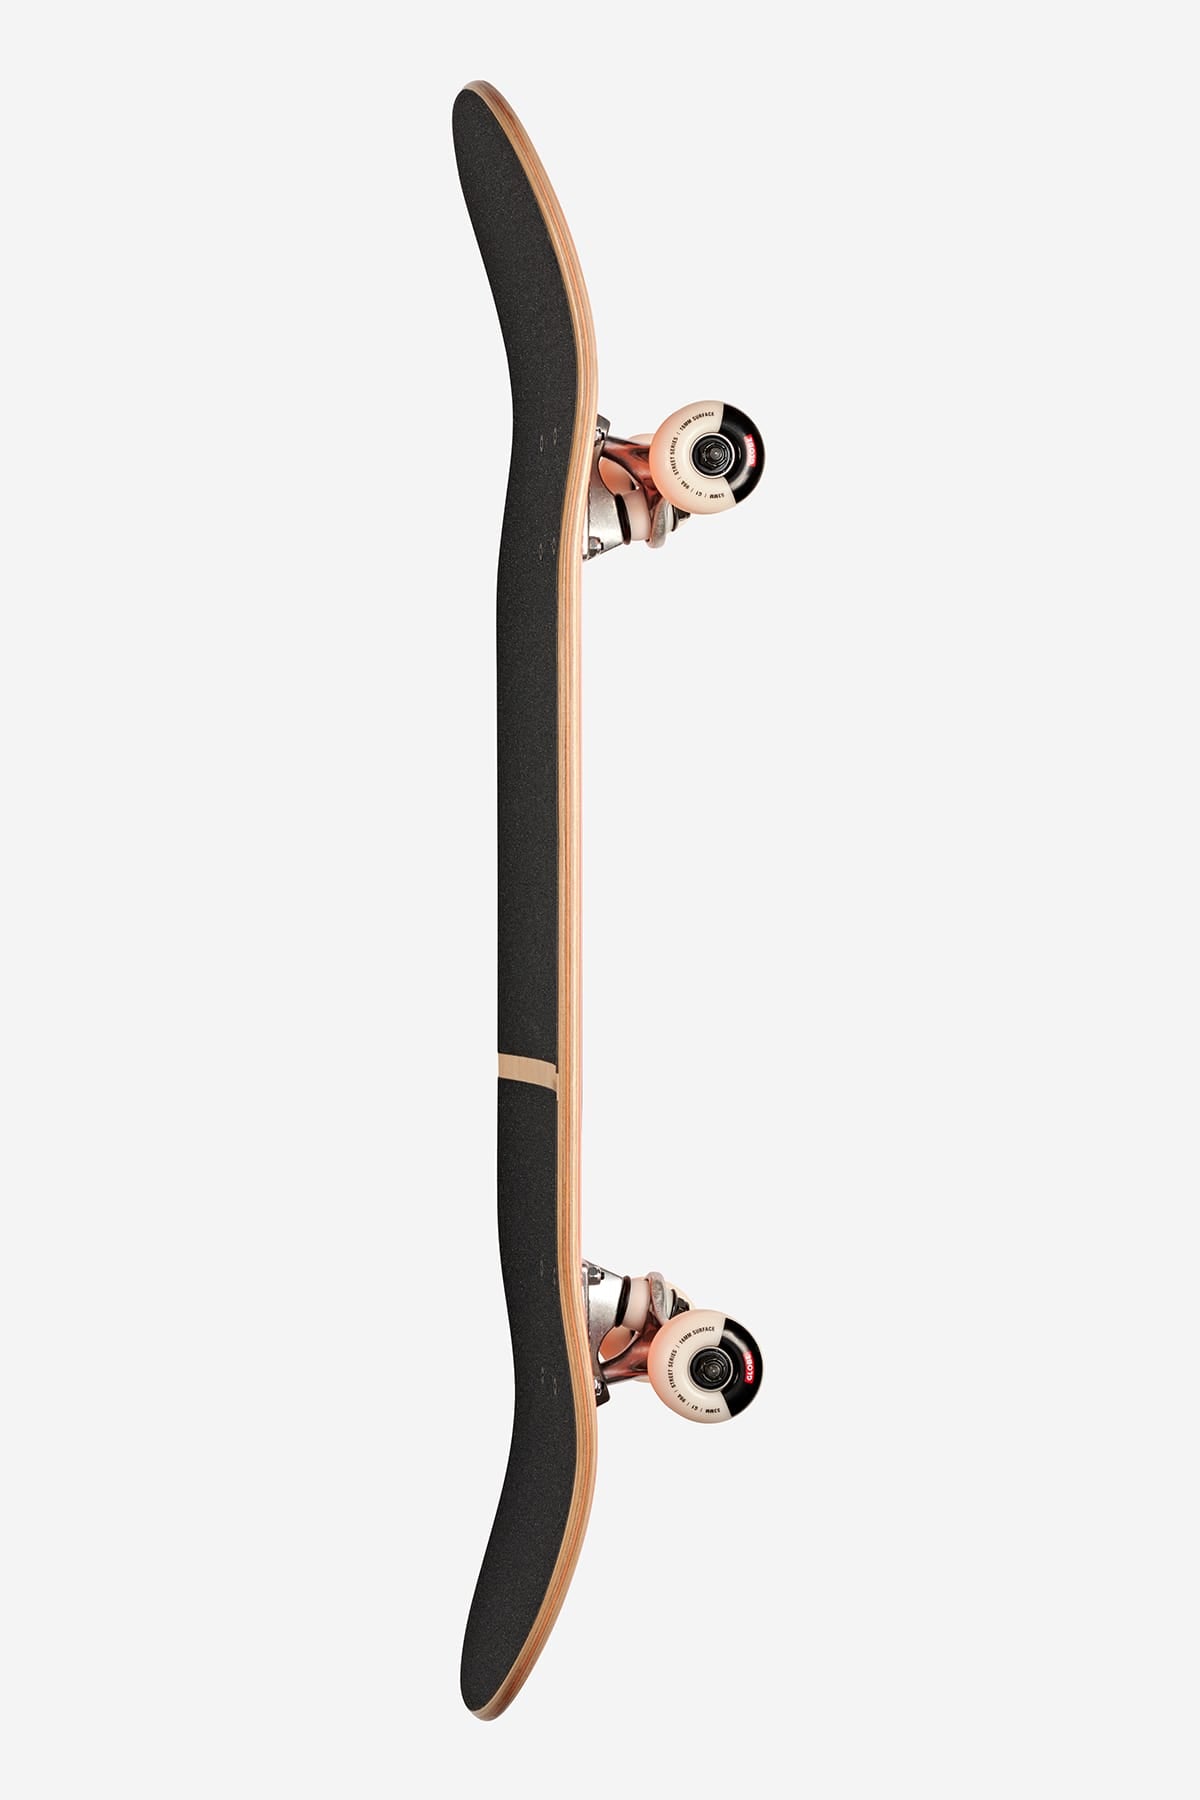 Globe - G1 Digital Nurture - Machine Made Man - 8.0" complet Skateboard